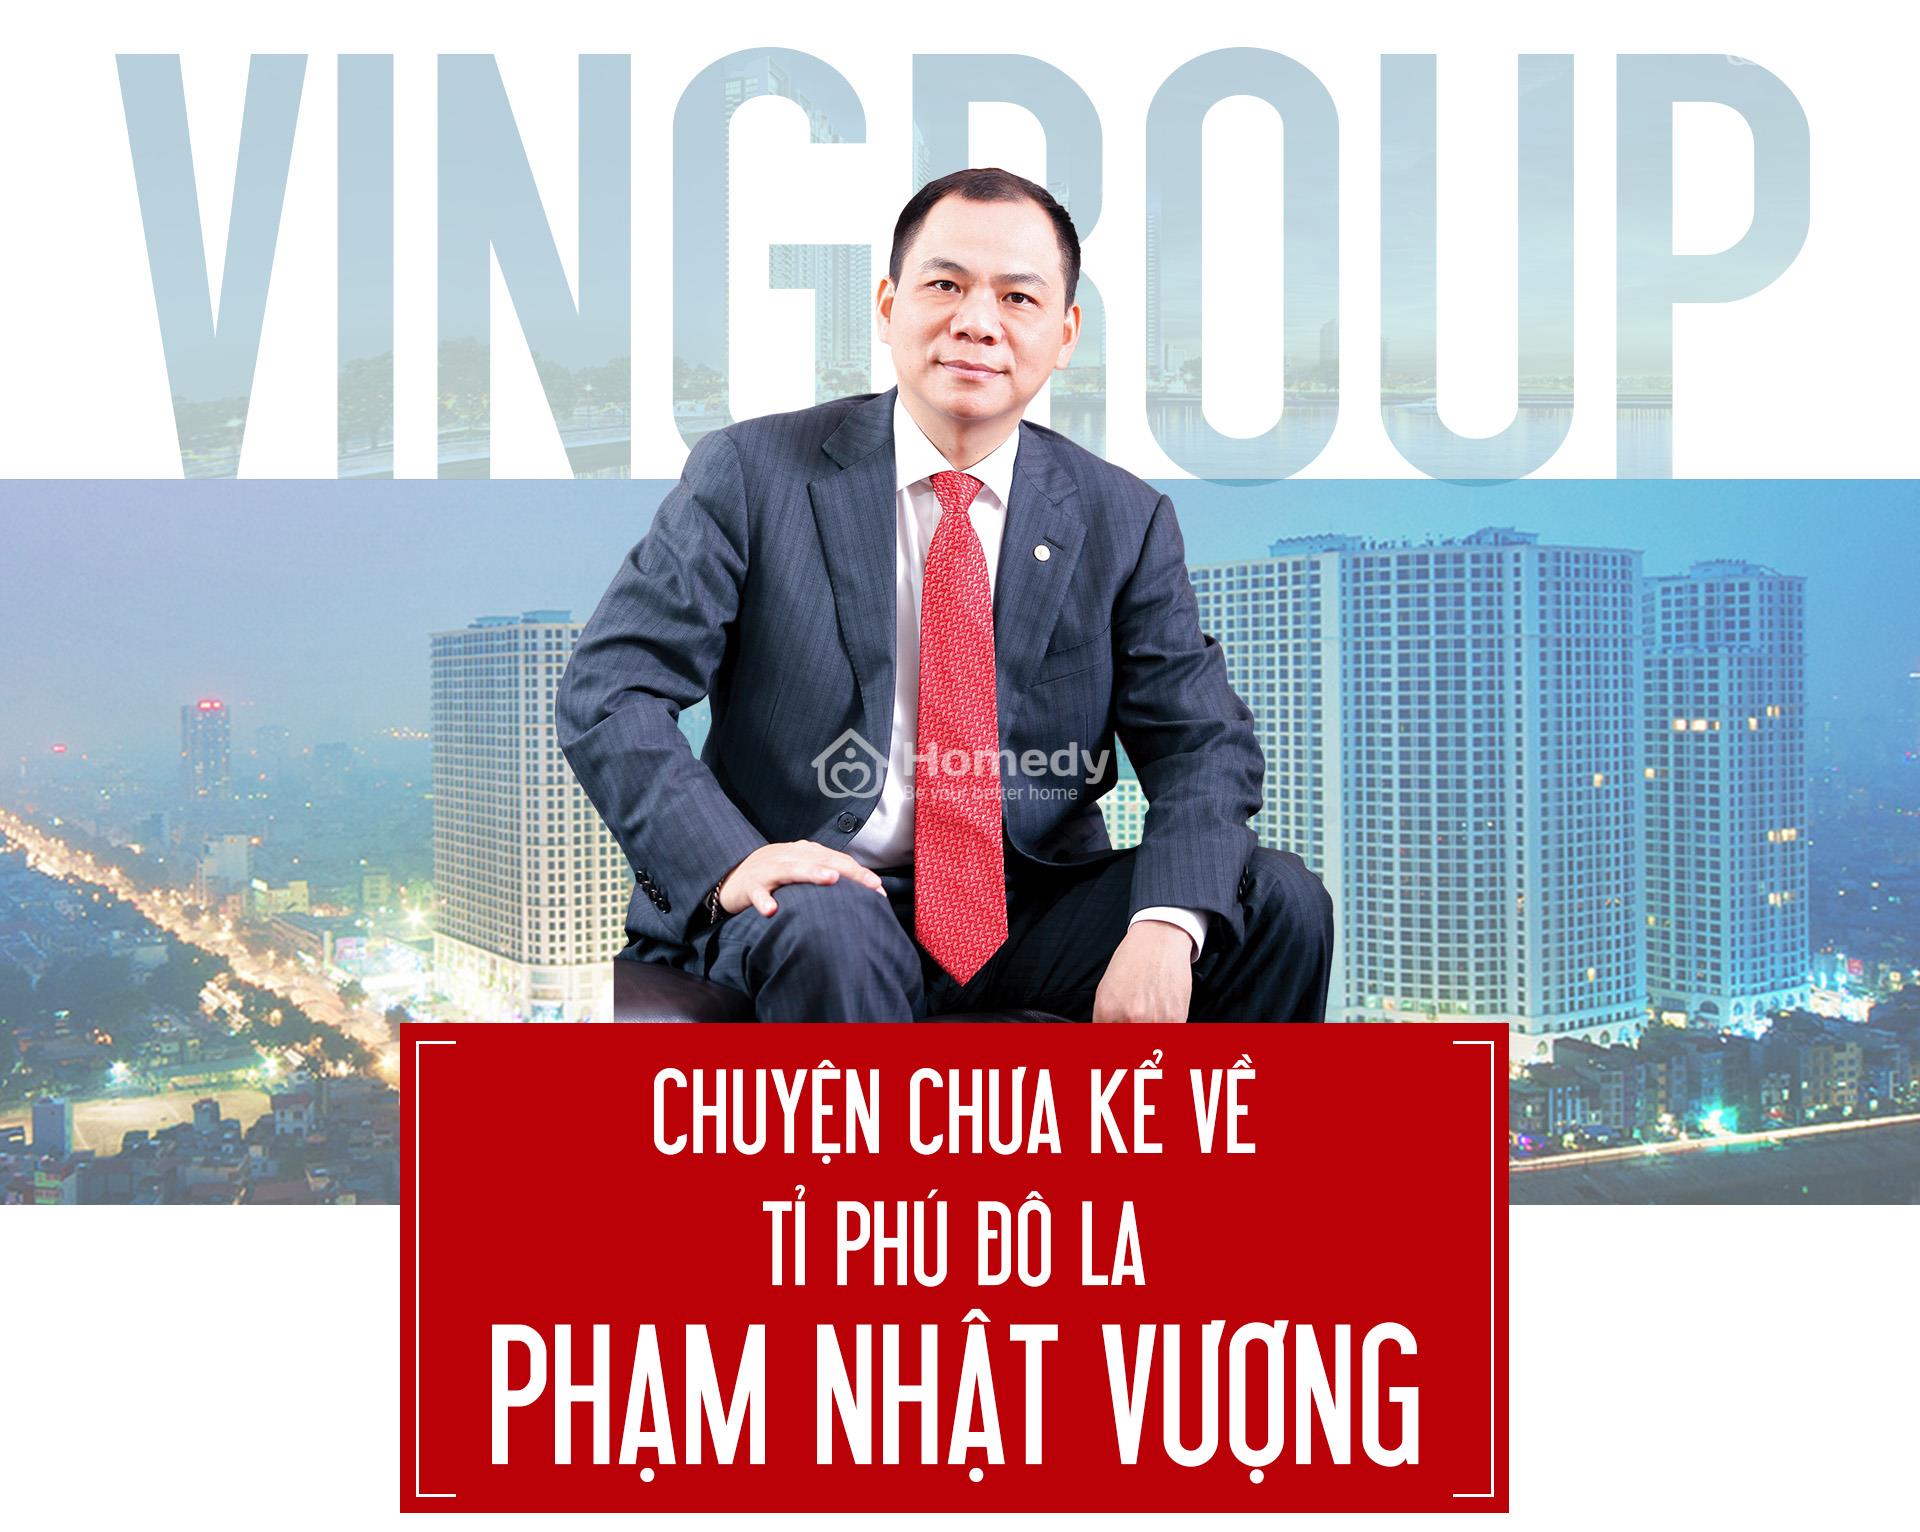 Doanh nghiep dau tien cua Pham Nhat Vuong